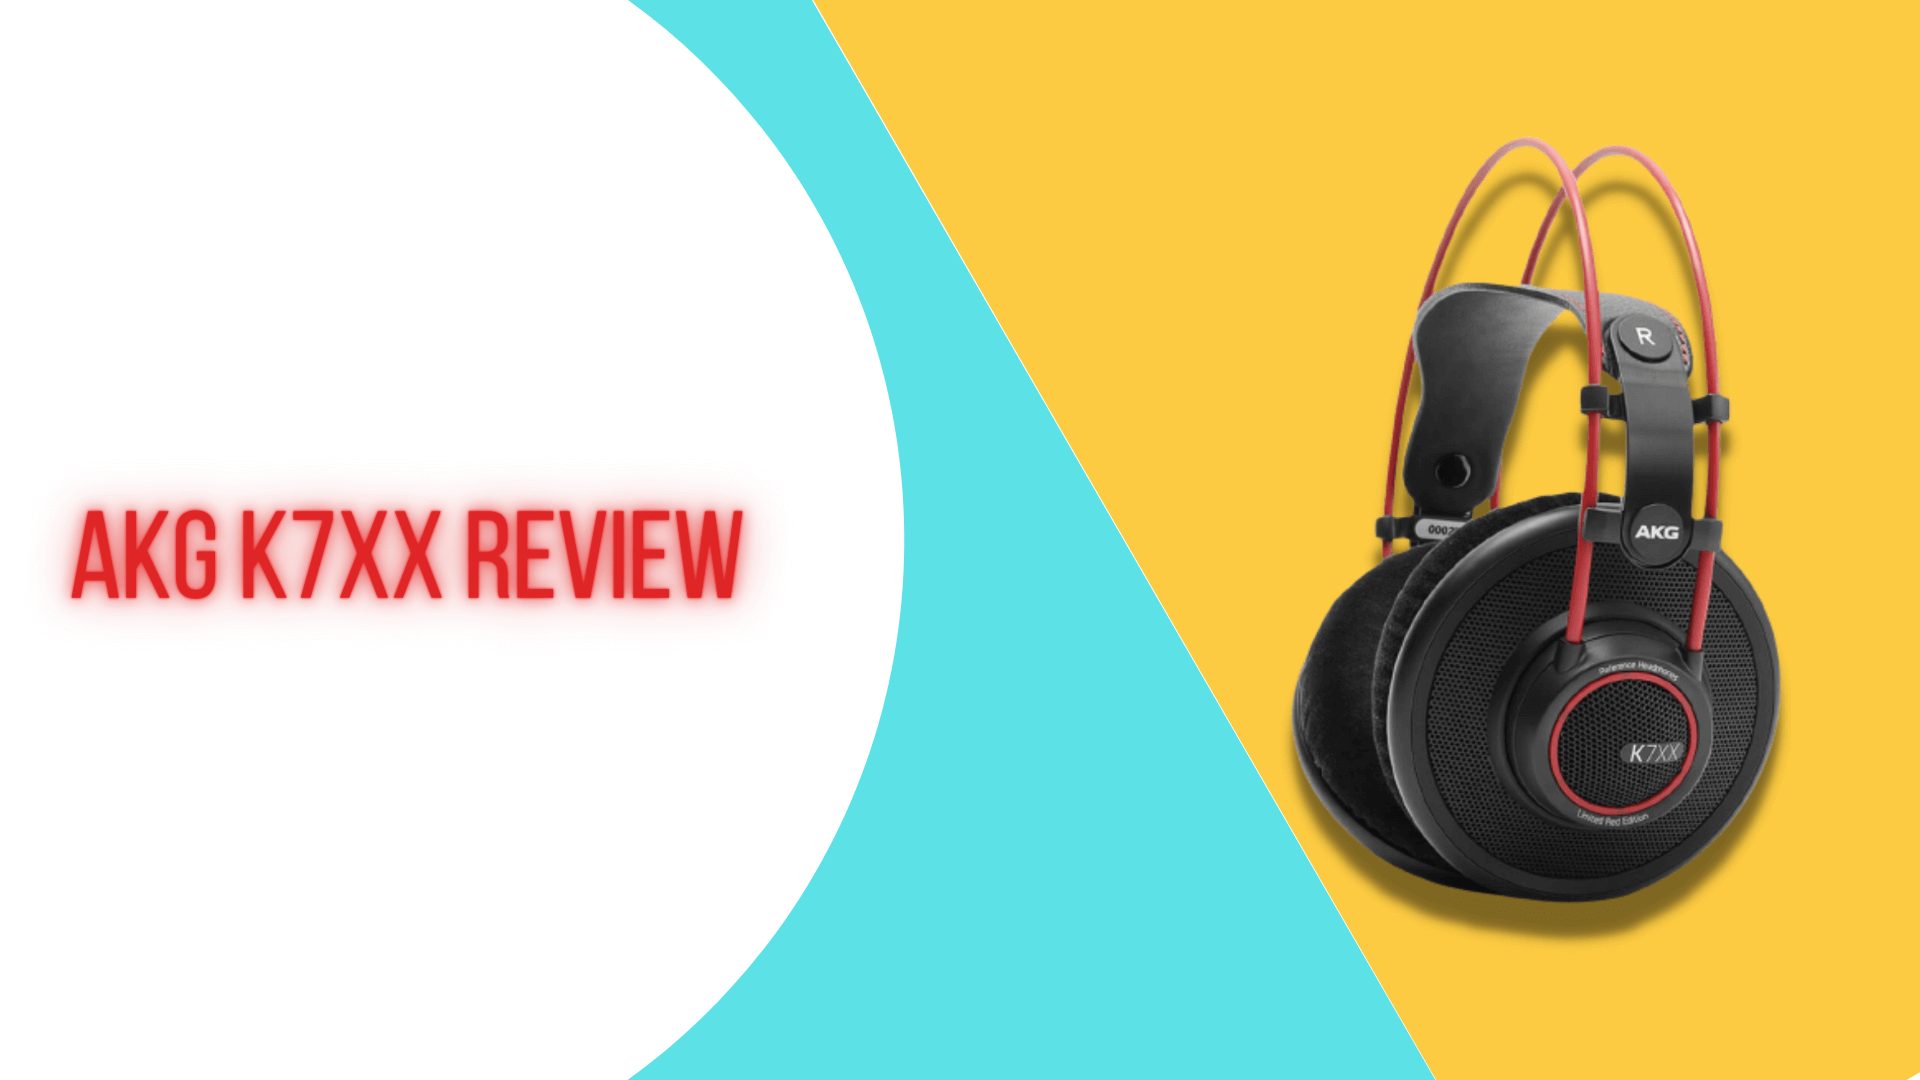 AKG K7XX Review